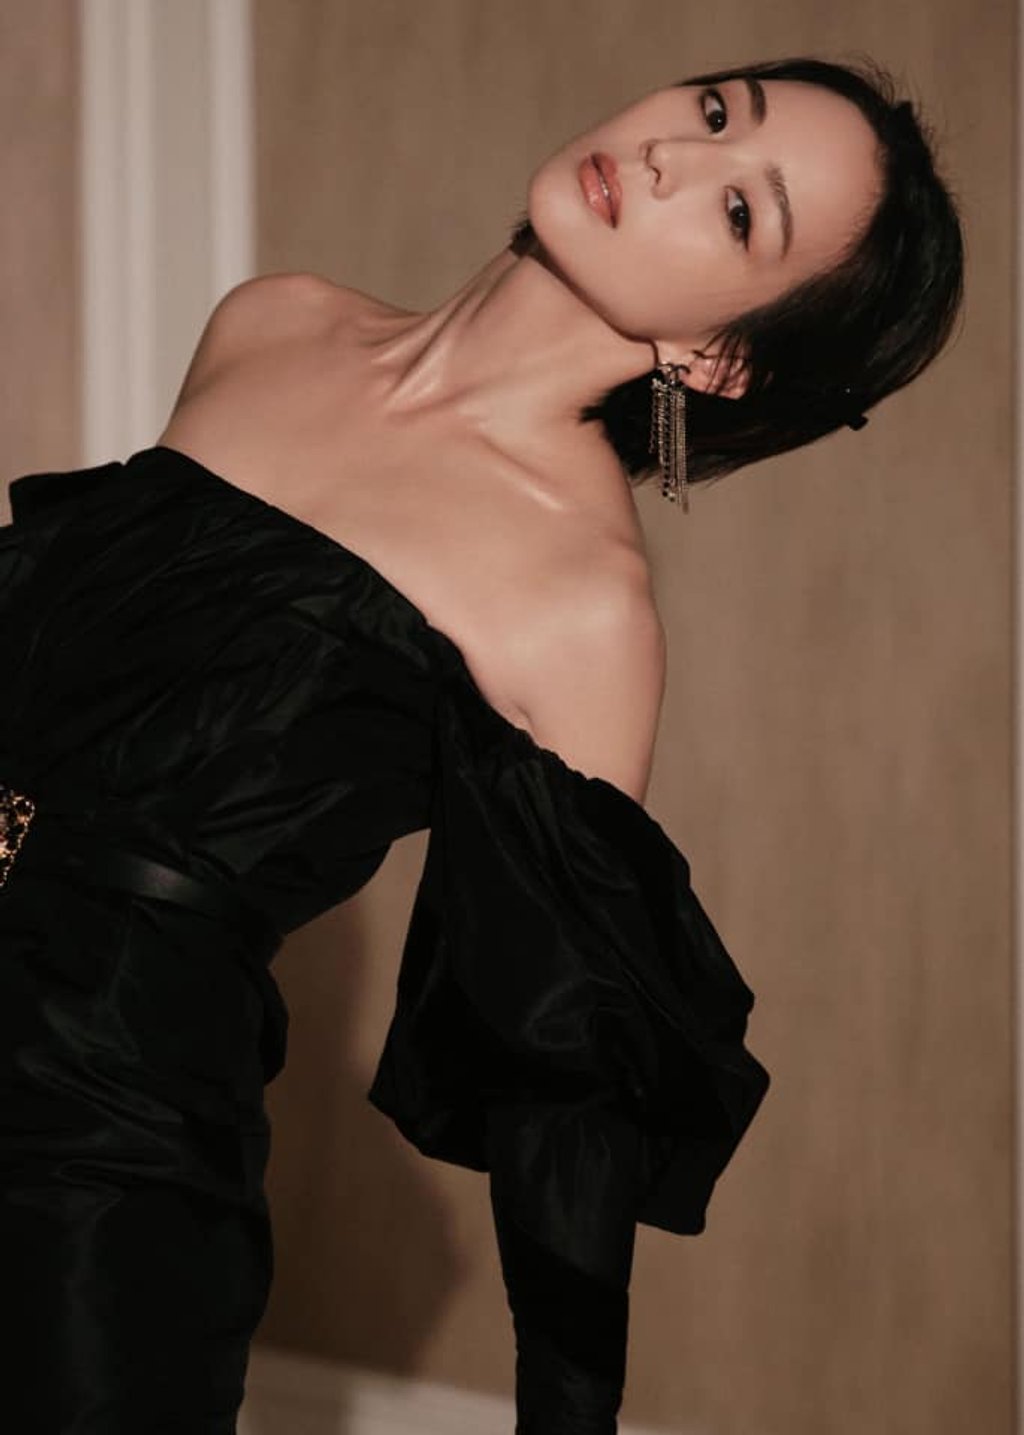 Trong thiết kế của Chanel, Trương Quân Ninh gợi cảm sang chảnh tột cùng. Bờ vai trần mềm mại, vóc dáng thon gọn ở tuổi 38, nhan sắc kiêu kỳ cá tính nhưng vẫn phảng phất nét tiểu thư đài các... tất cả đều khiến công chúng không thể rời mắt khỏi.